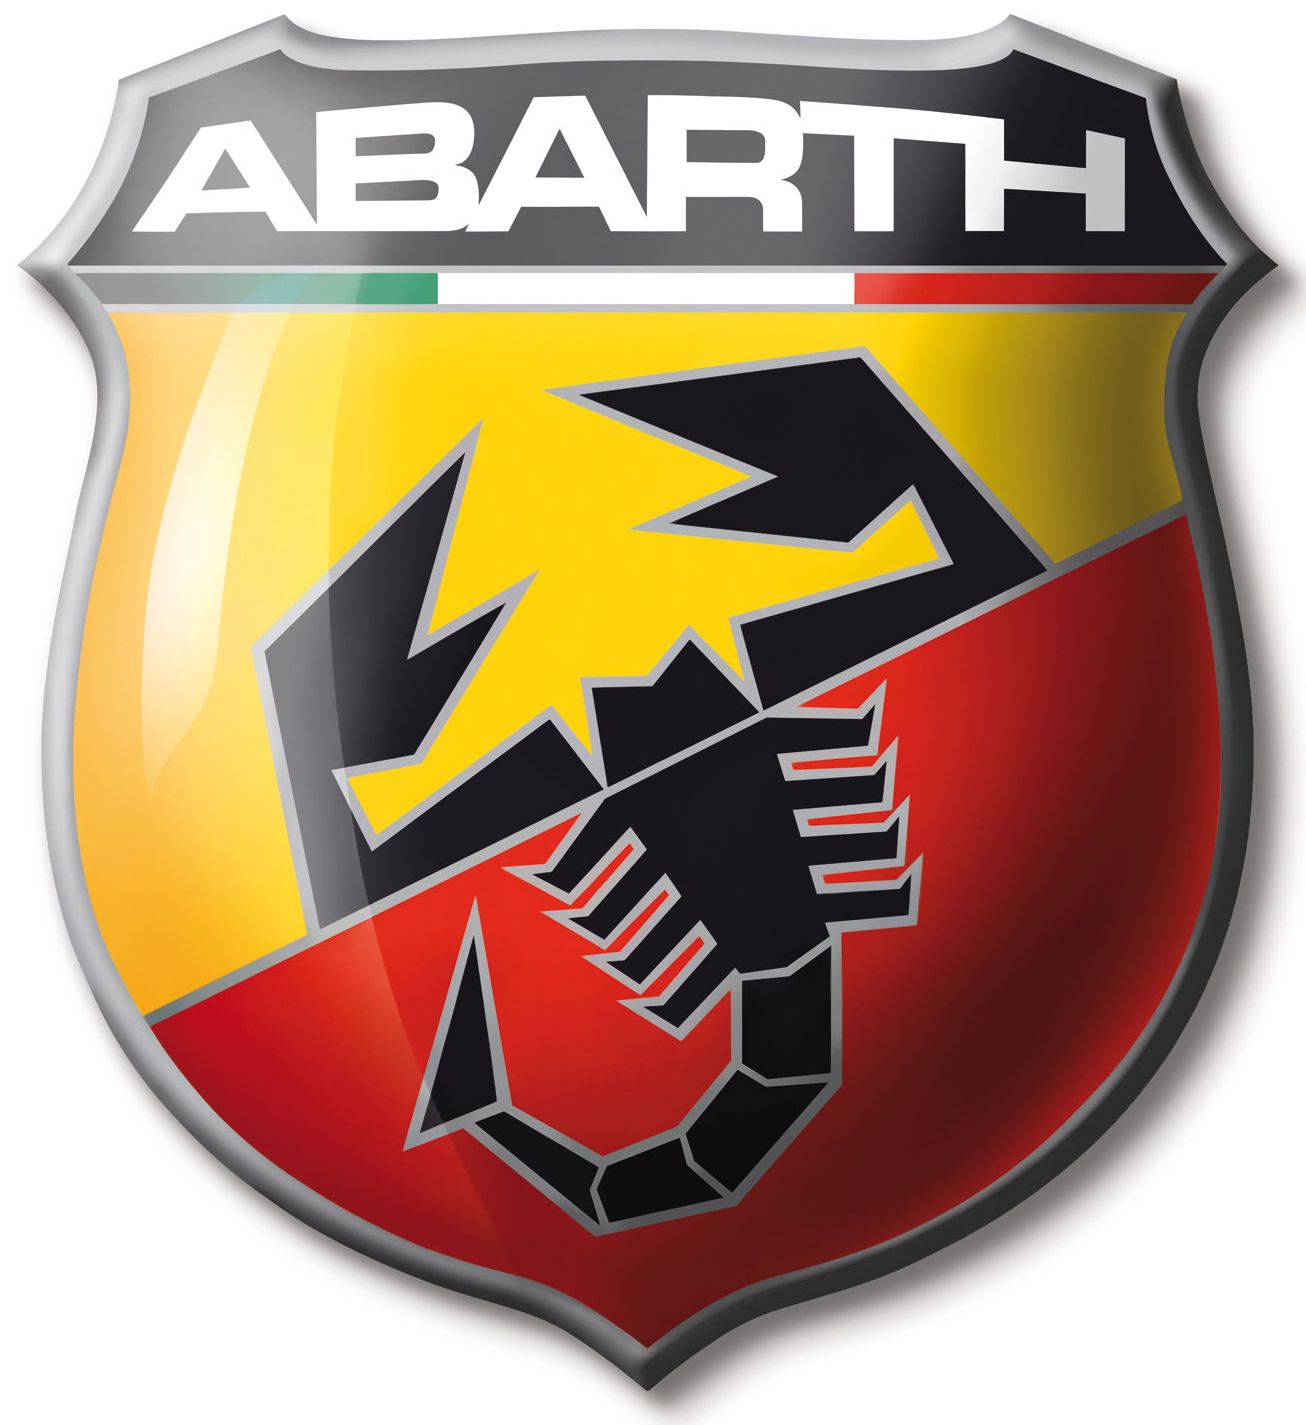 Abarth Fahrzeuge - Autolook AG - Autogarage in Trübbach